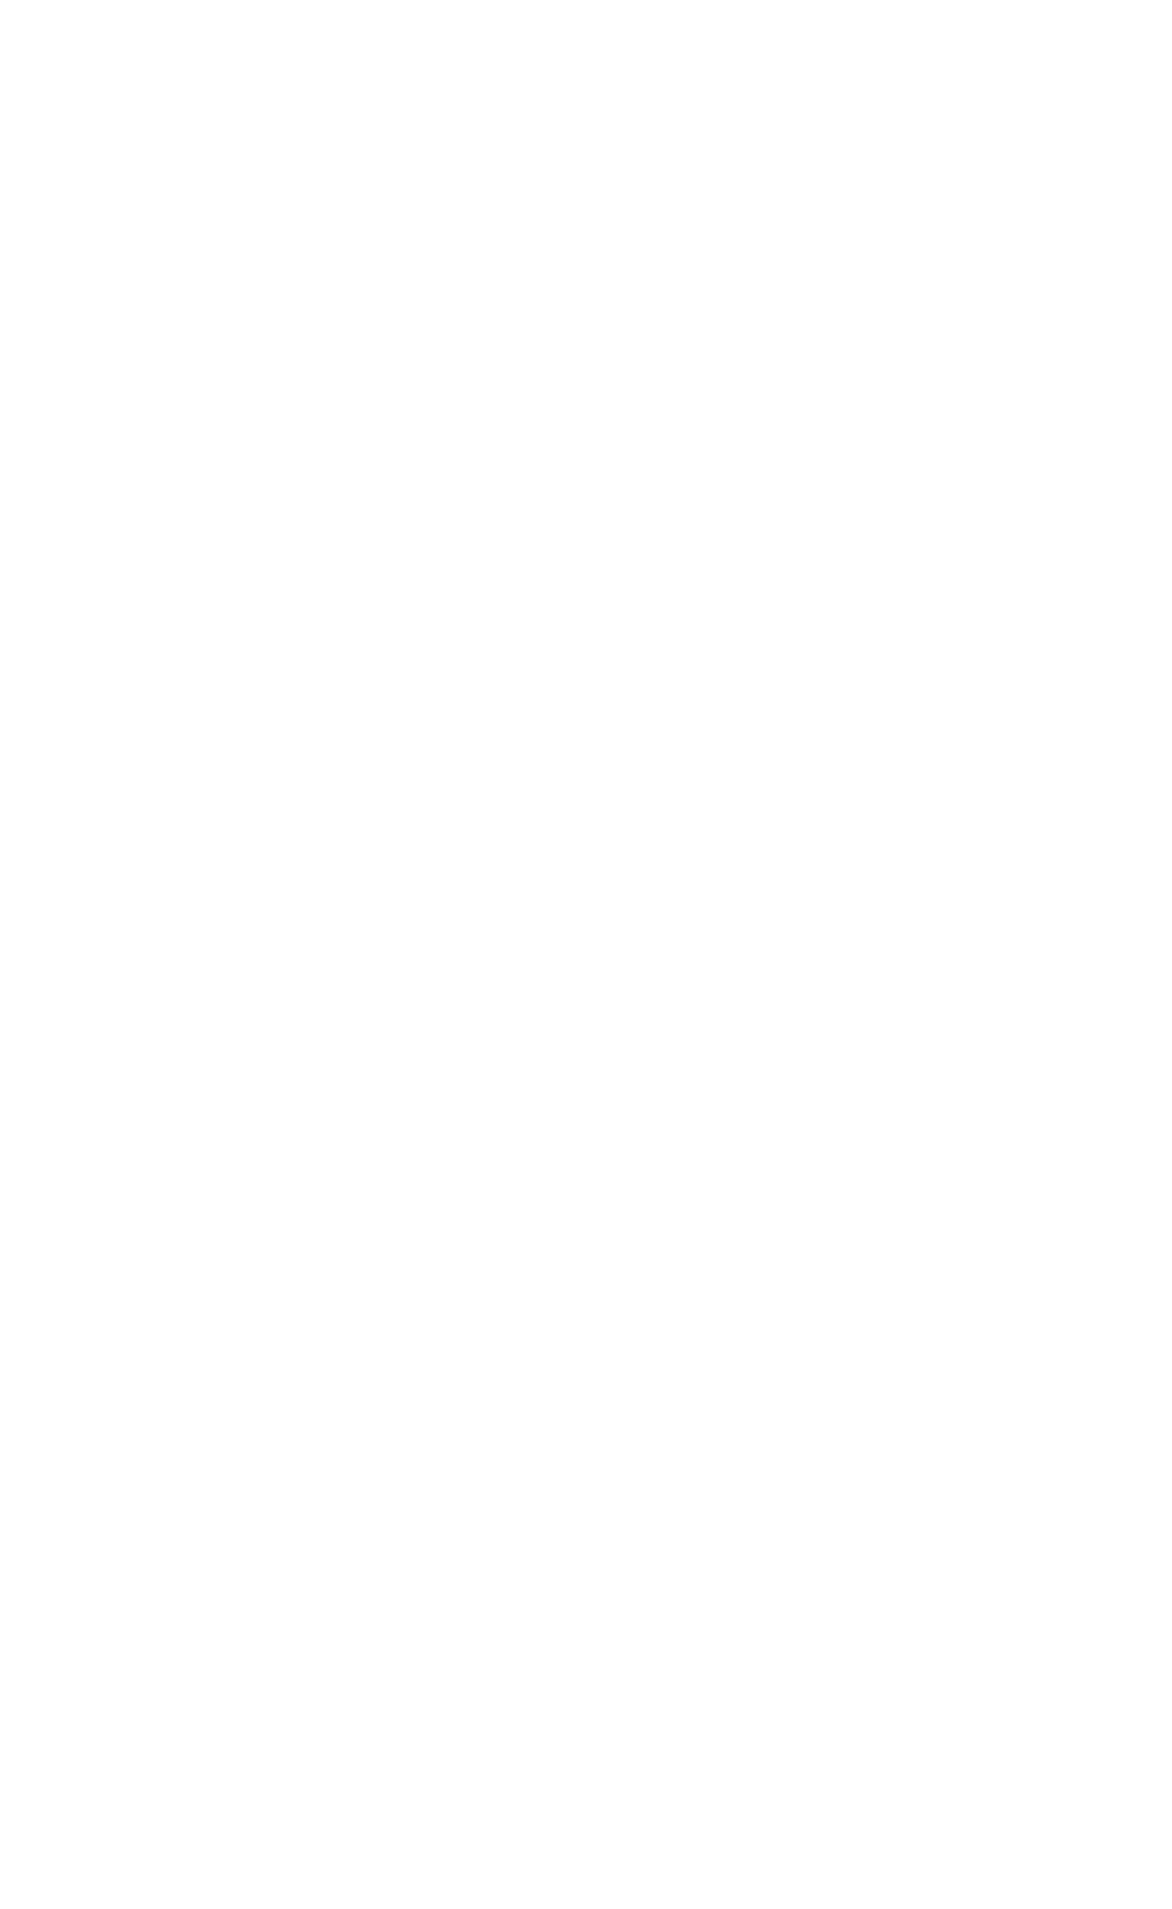 TTL EGYPT for Web Development | Mobile Apps | Digital Marketing